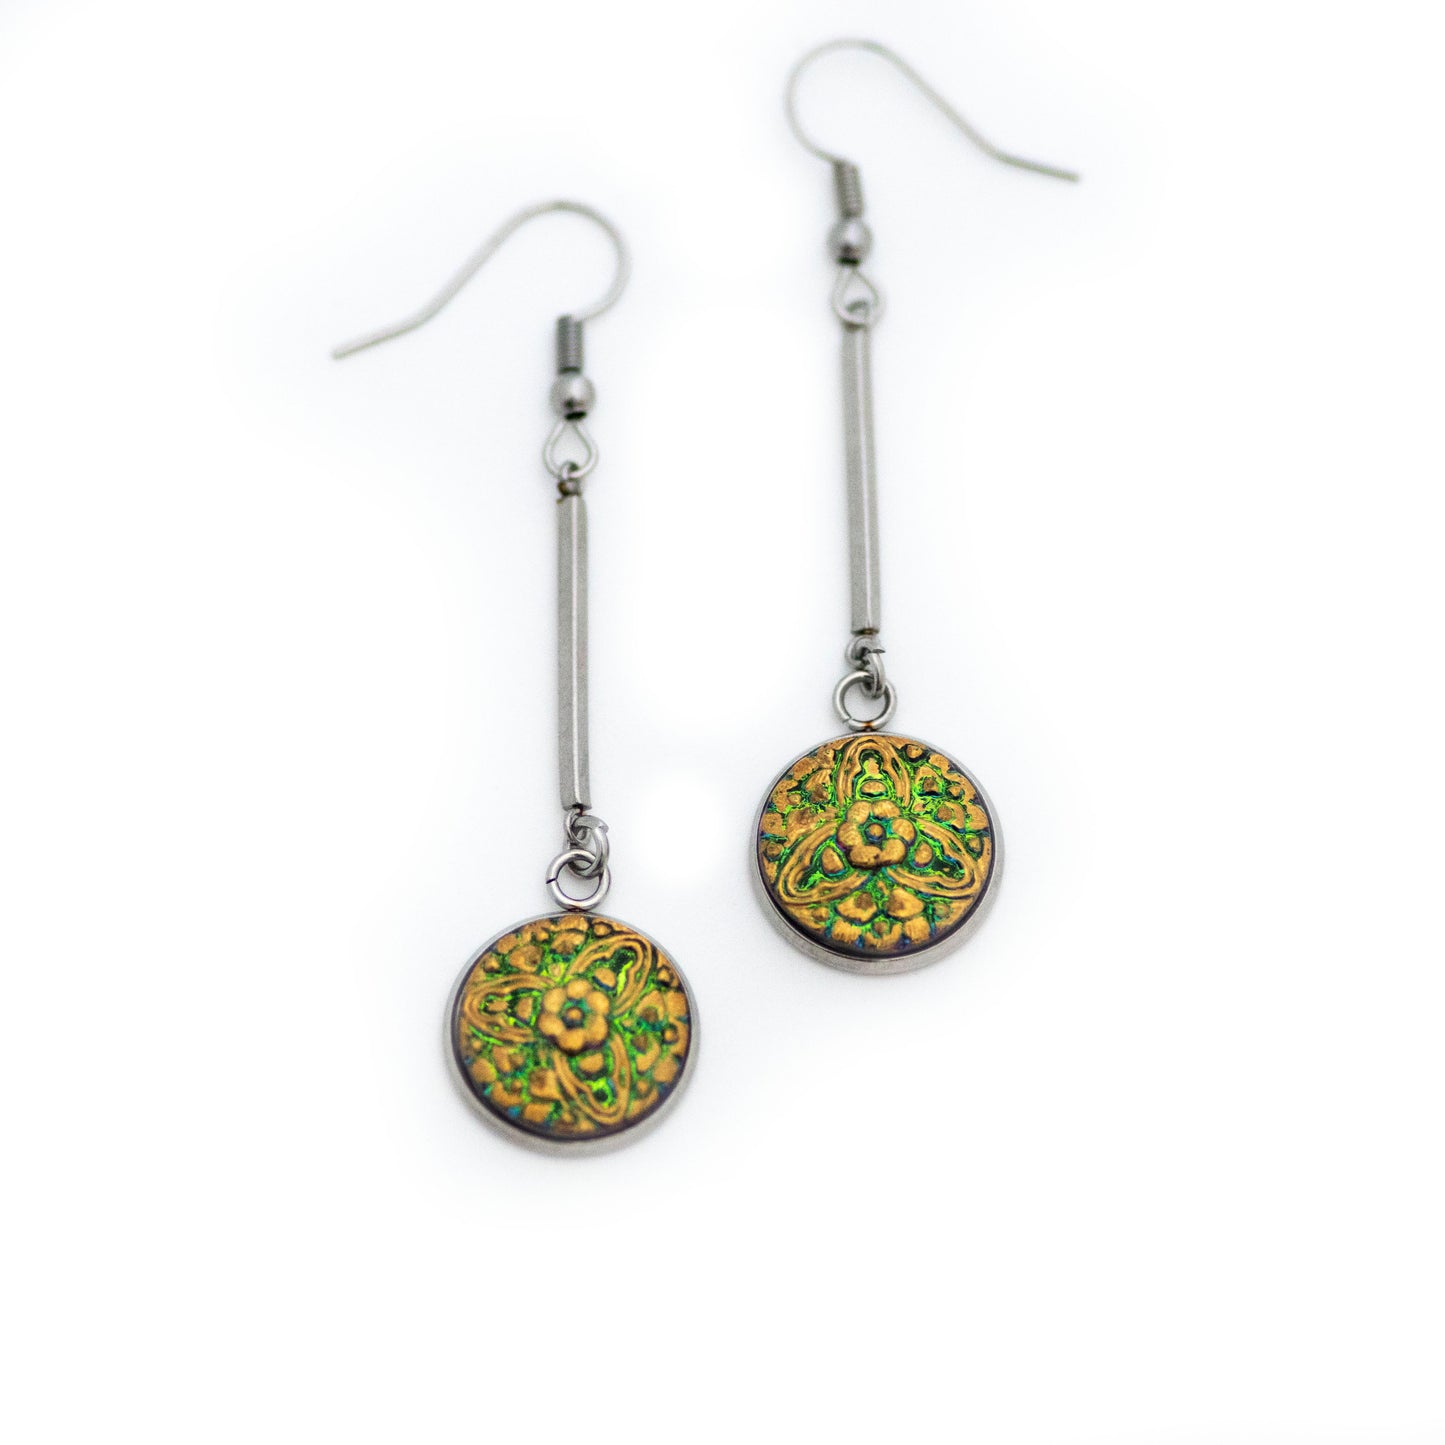 Czech Glass Button Earrings - Green & Gold Floral Bar Dangle